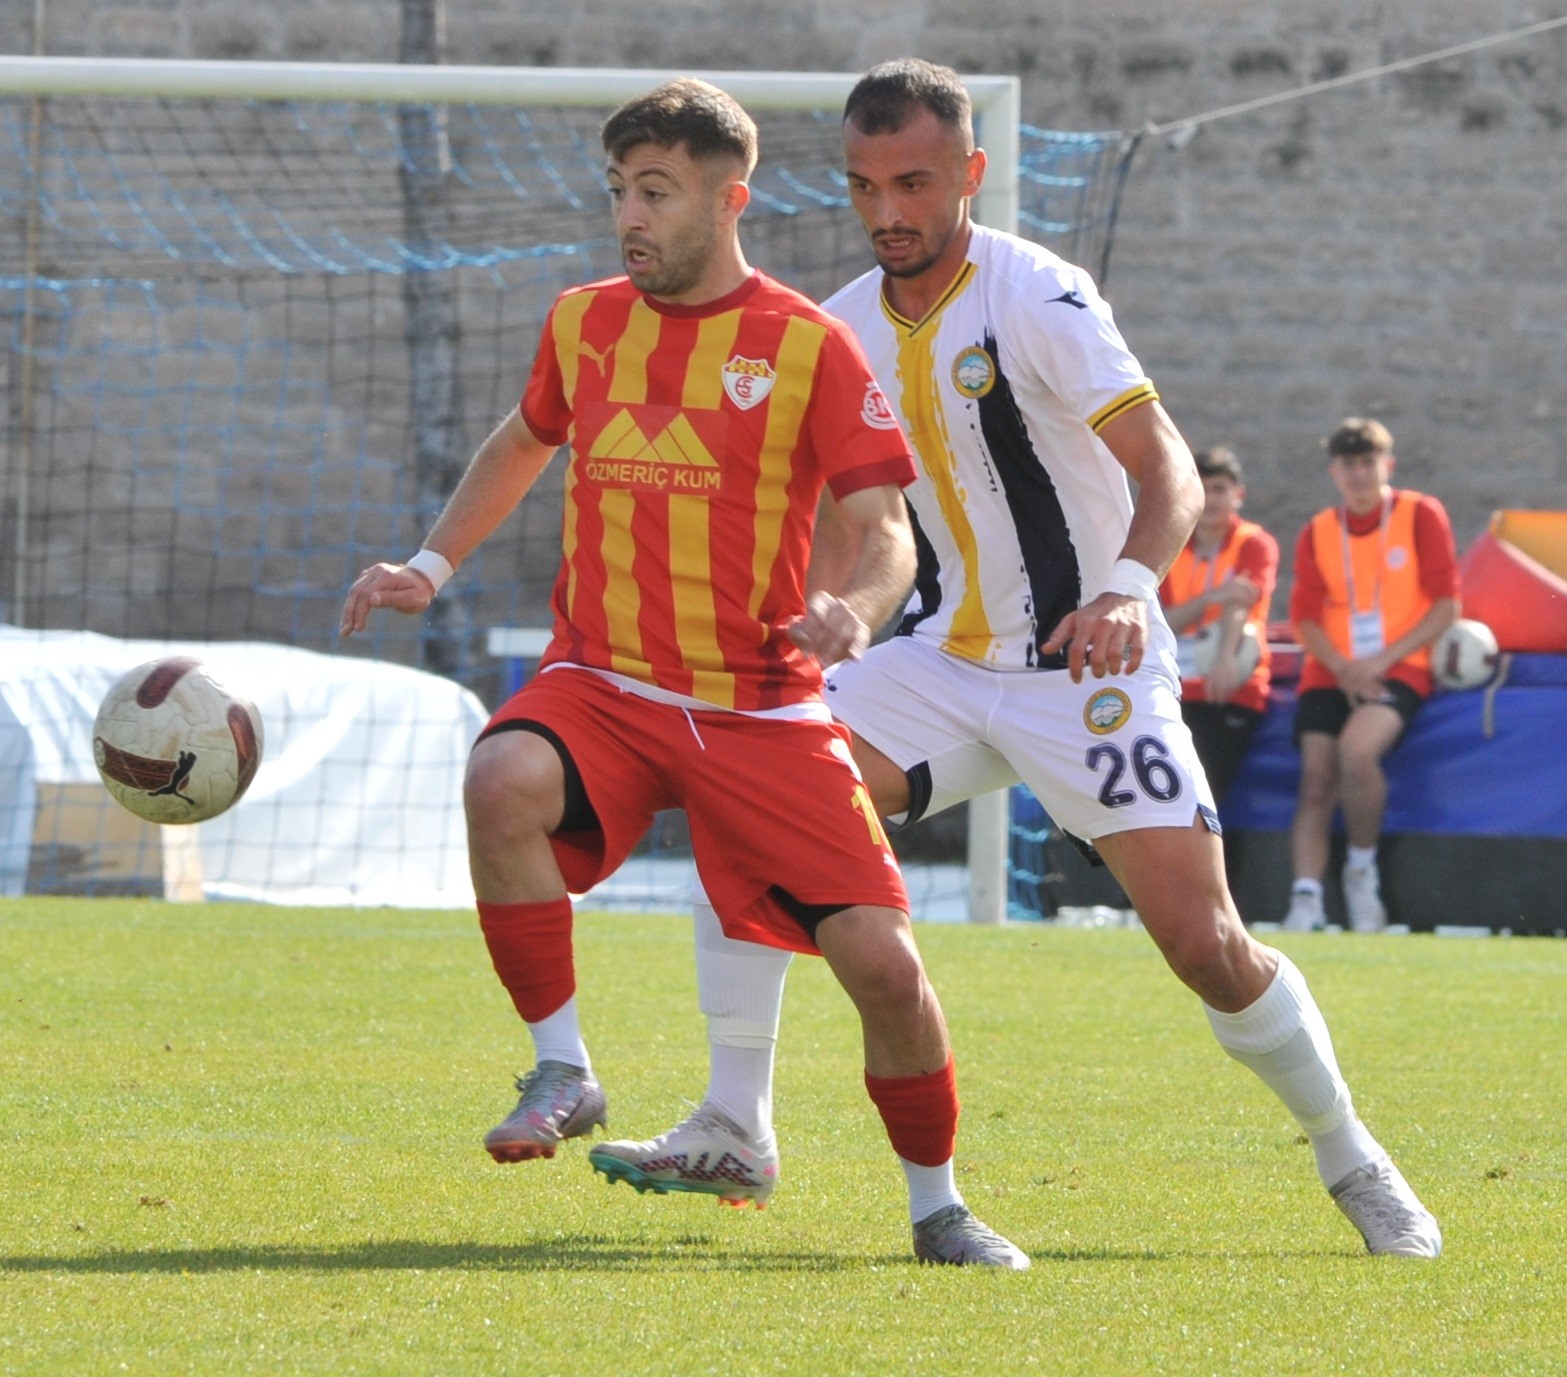 TFF 3. Lig 1. Grup: Edirnespor: 1 - Talasgücü Belediyespor: 0
